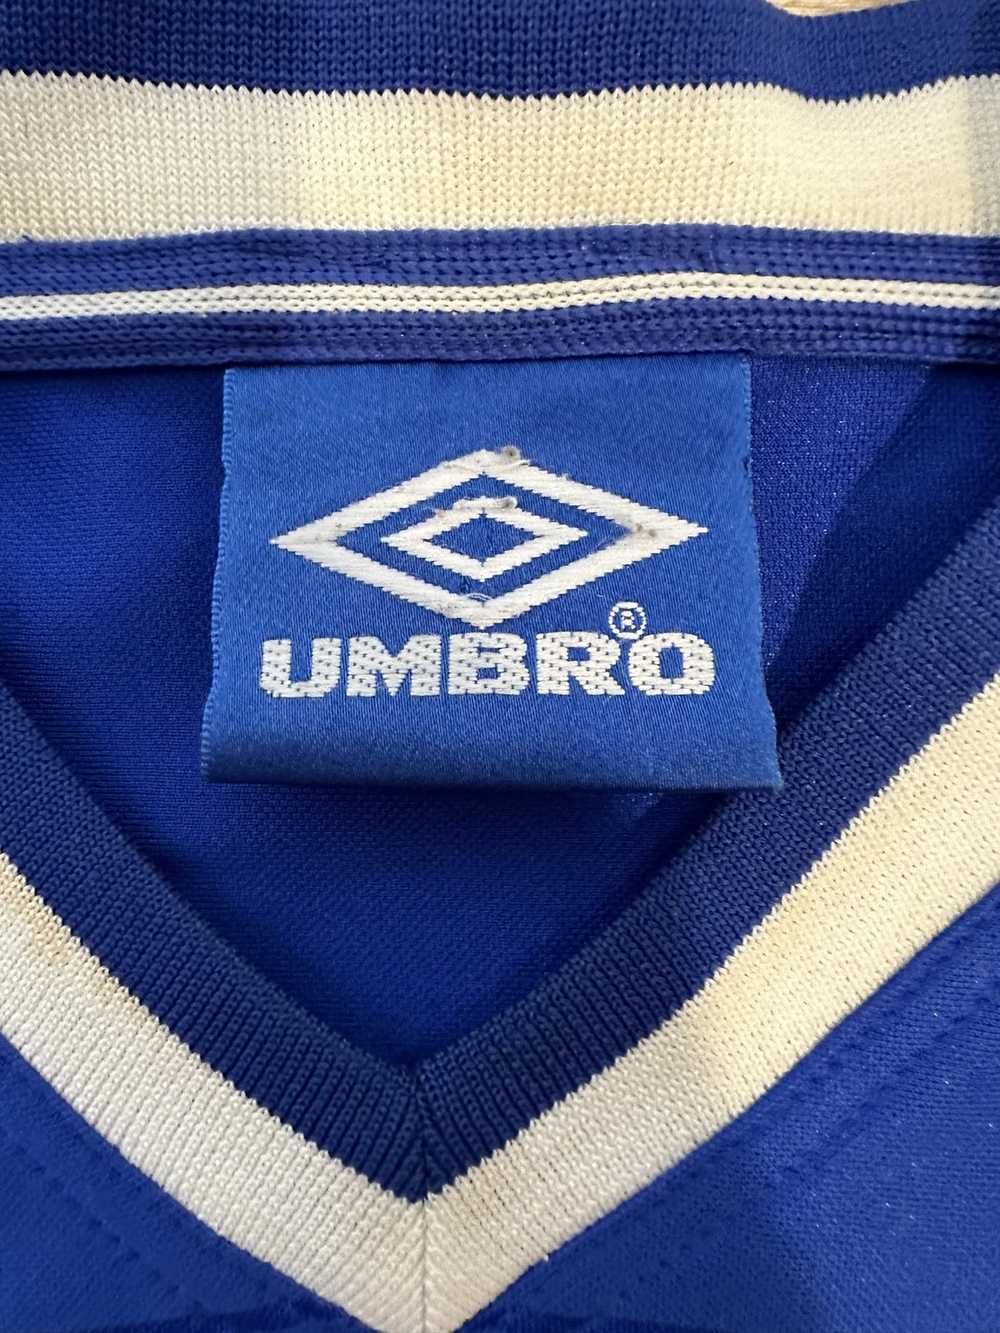 Soccer Jersey × Umbro × Vintage FC Everton 1999 2… - image 4